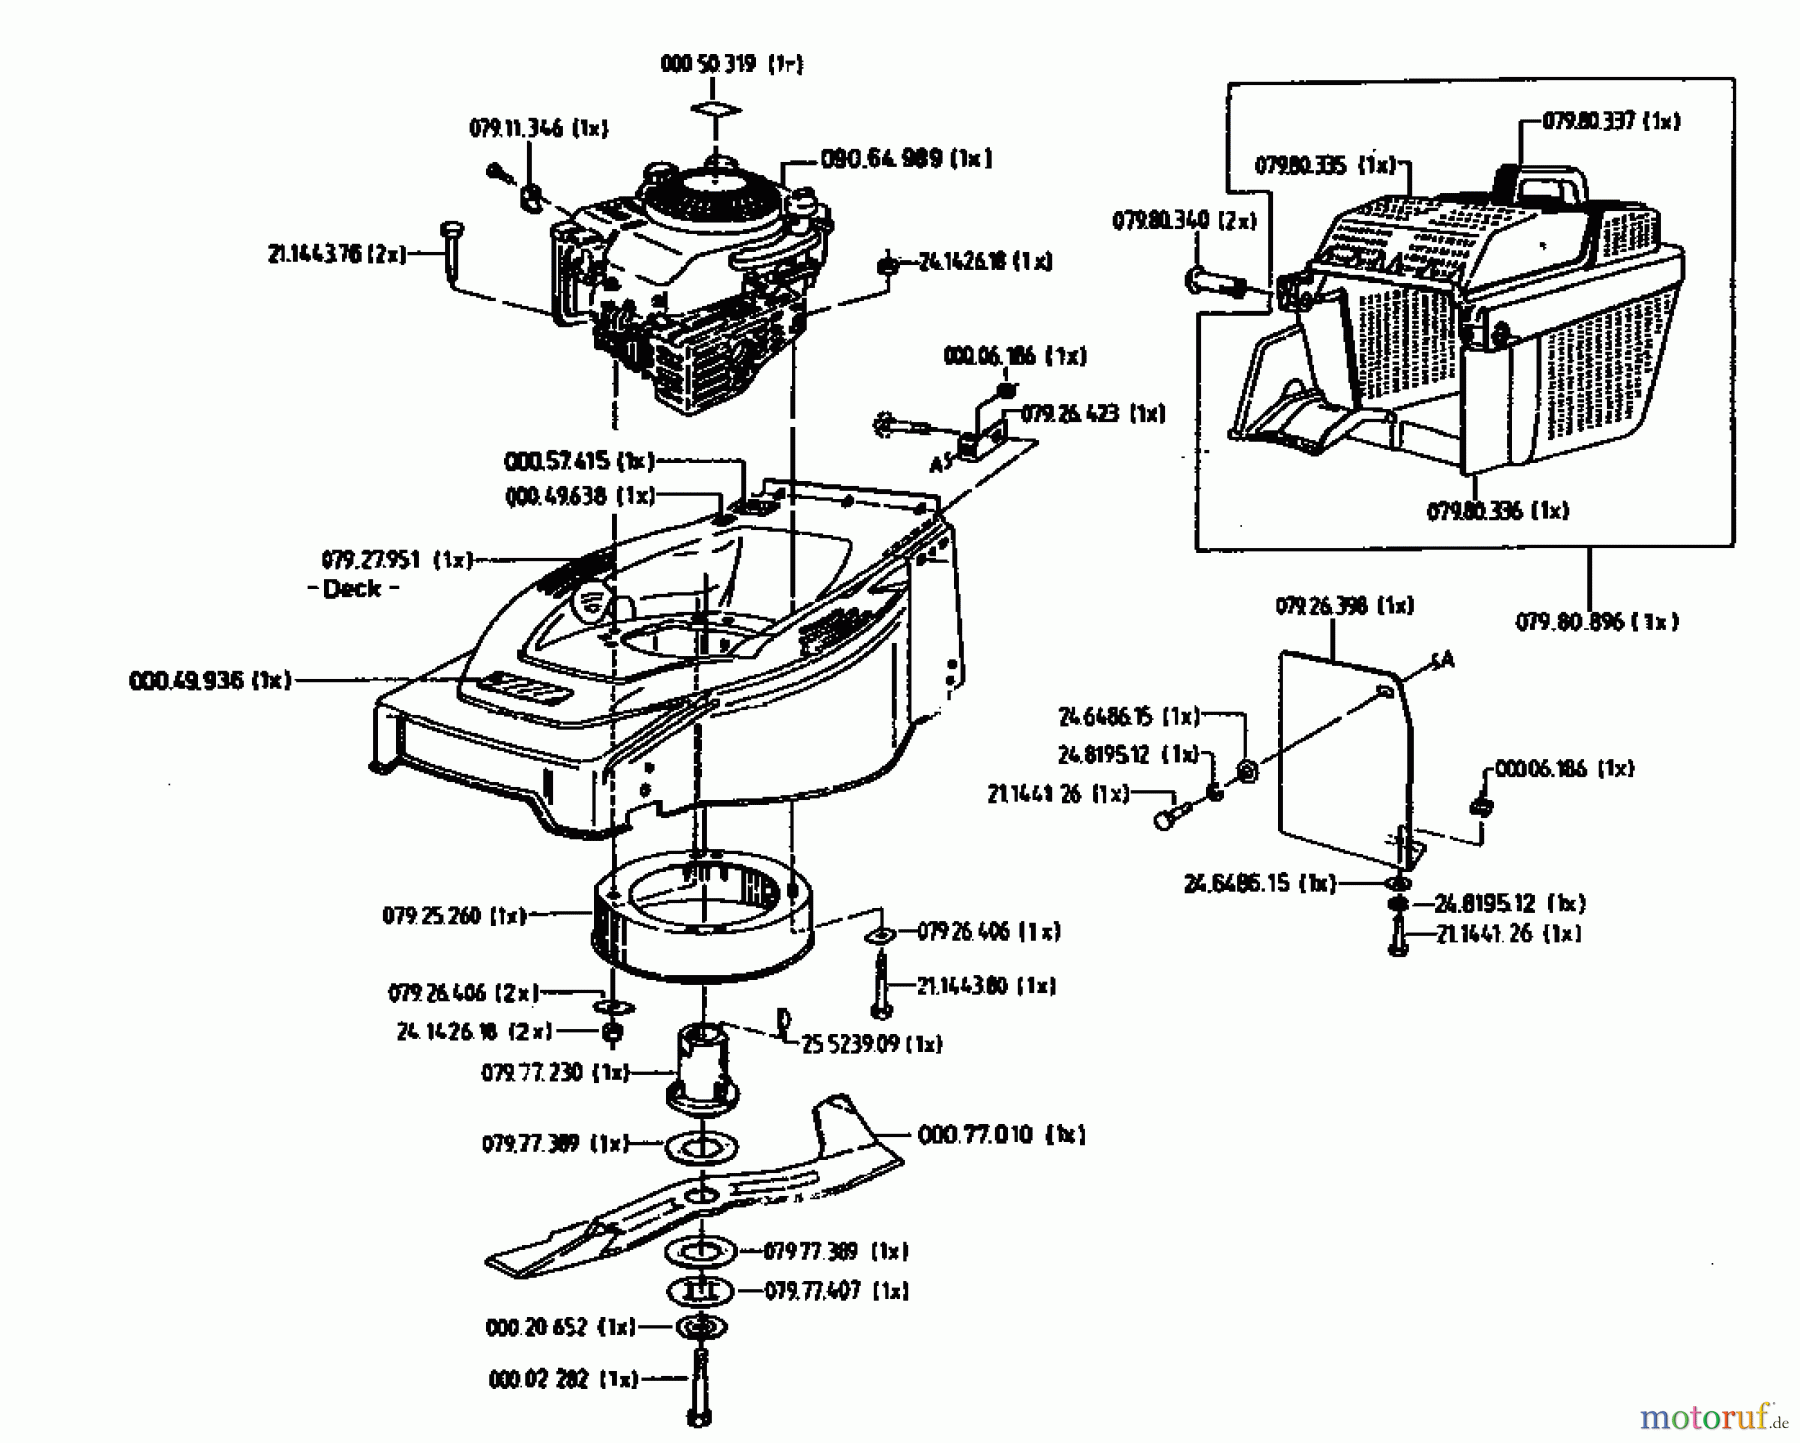  Gutbrod Tondeuse thermique HB 48 02814.08  (1996) Machine de base